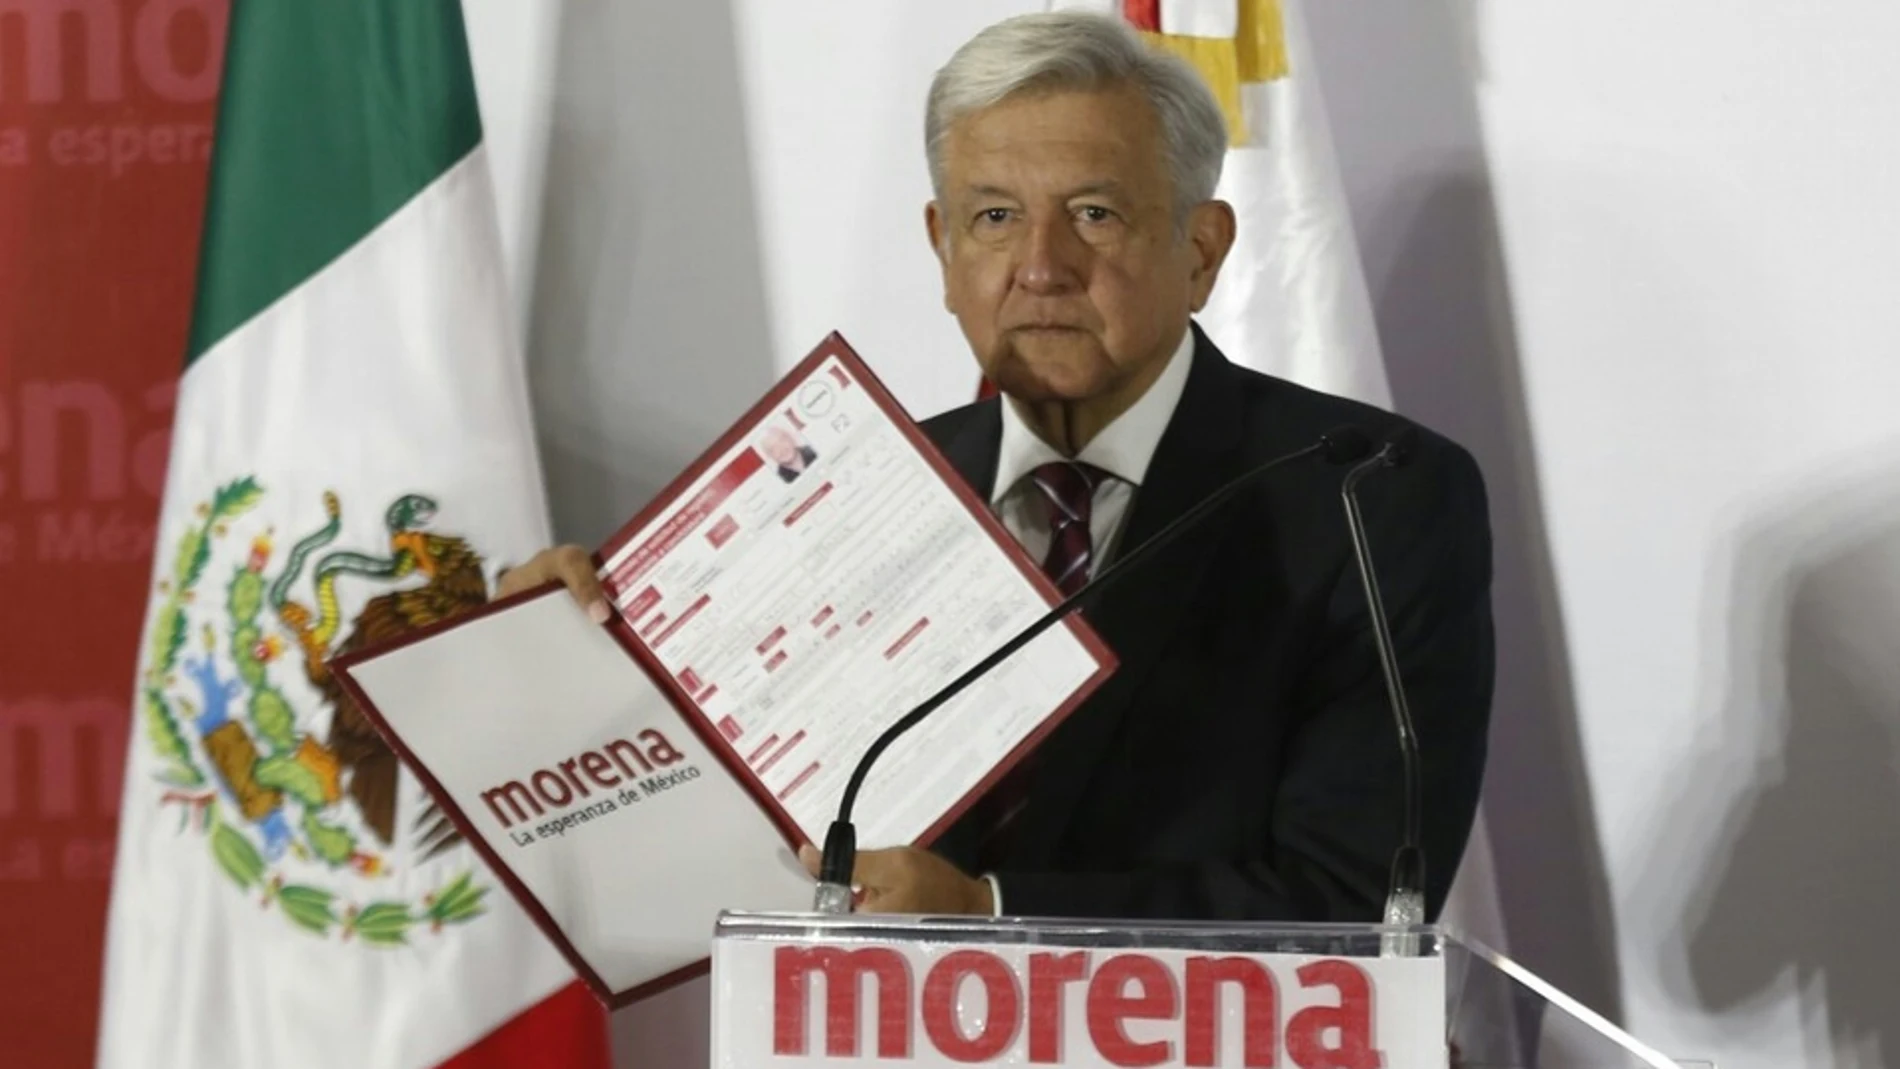 Qué es Morena, el partido del presidente de México López Obrador